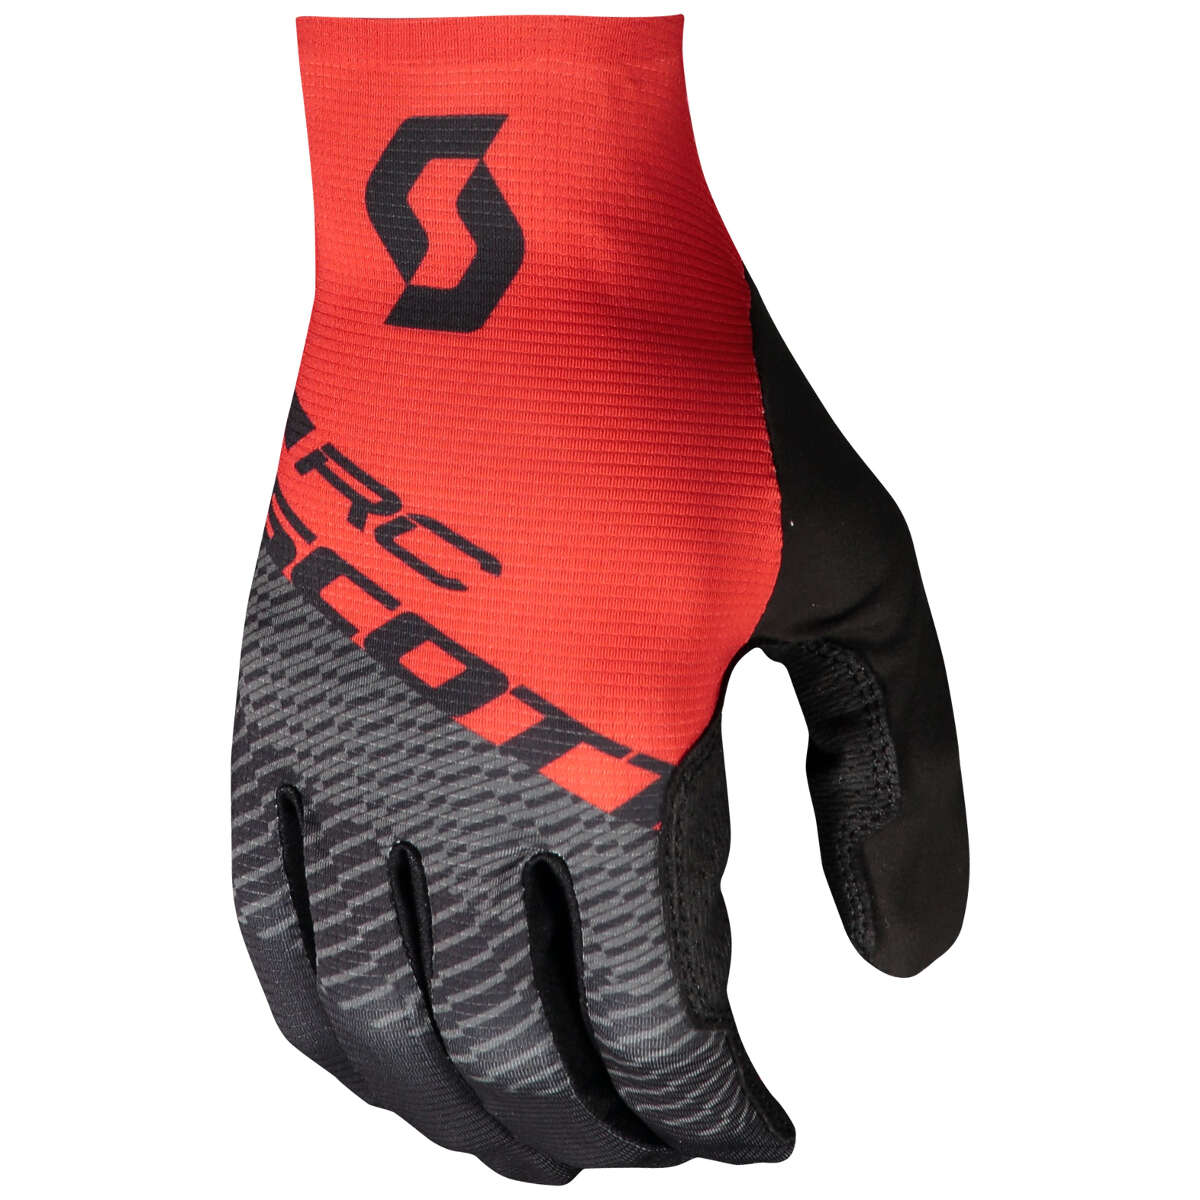 Scott Gloves RC Pro Black/Fiery Red